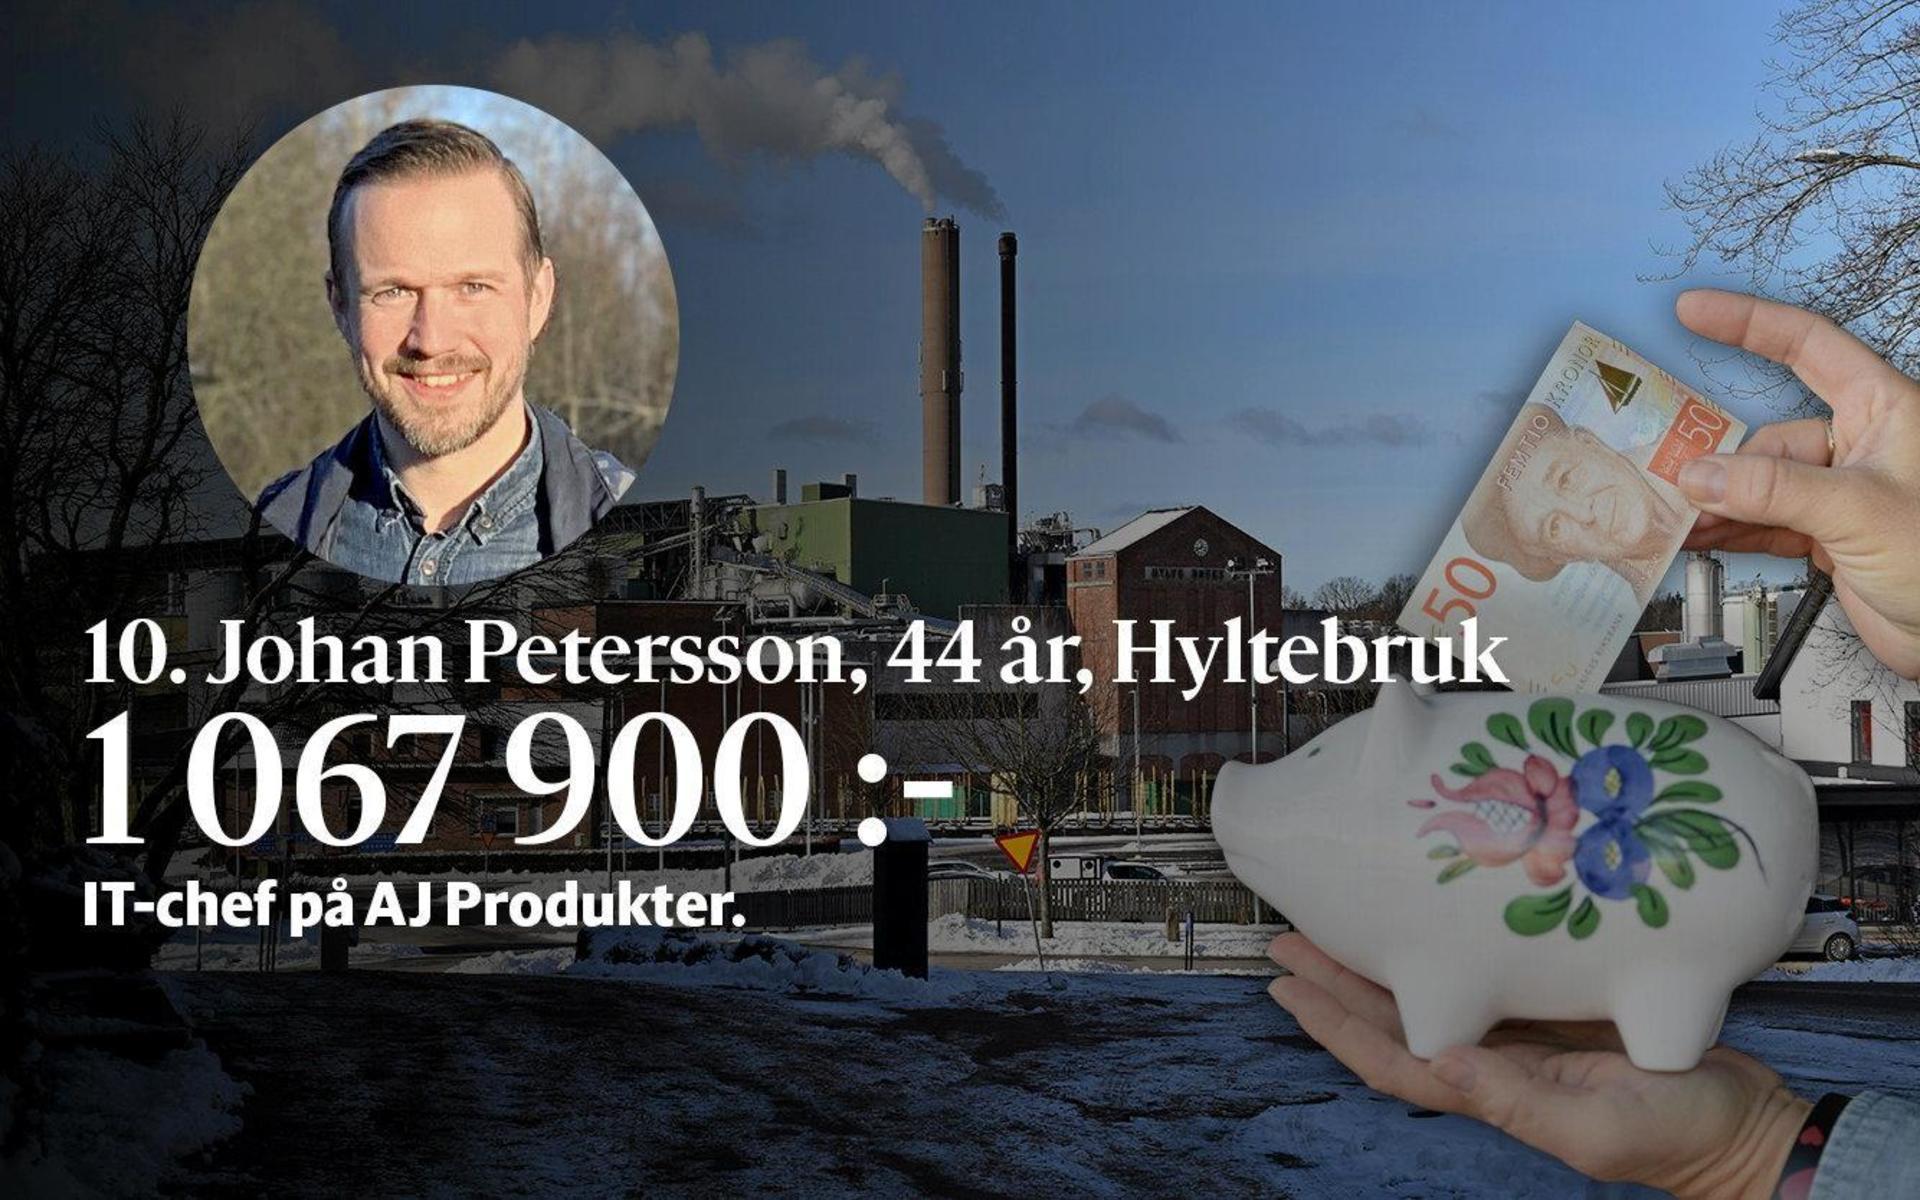 10. Johan Petersson jobbar som IT-chef på AJ Produkter. Är även ordförande för Hylte skateparkförening.